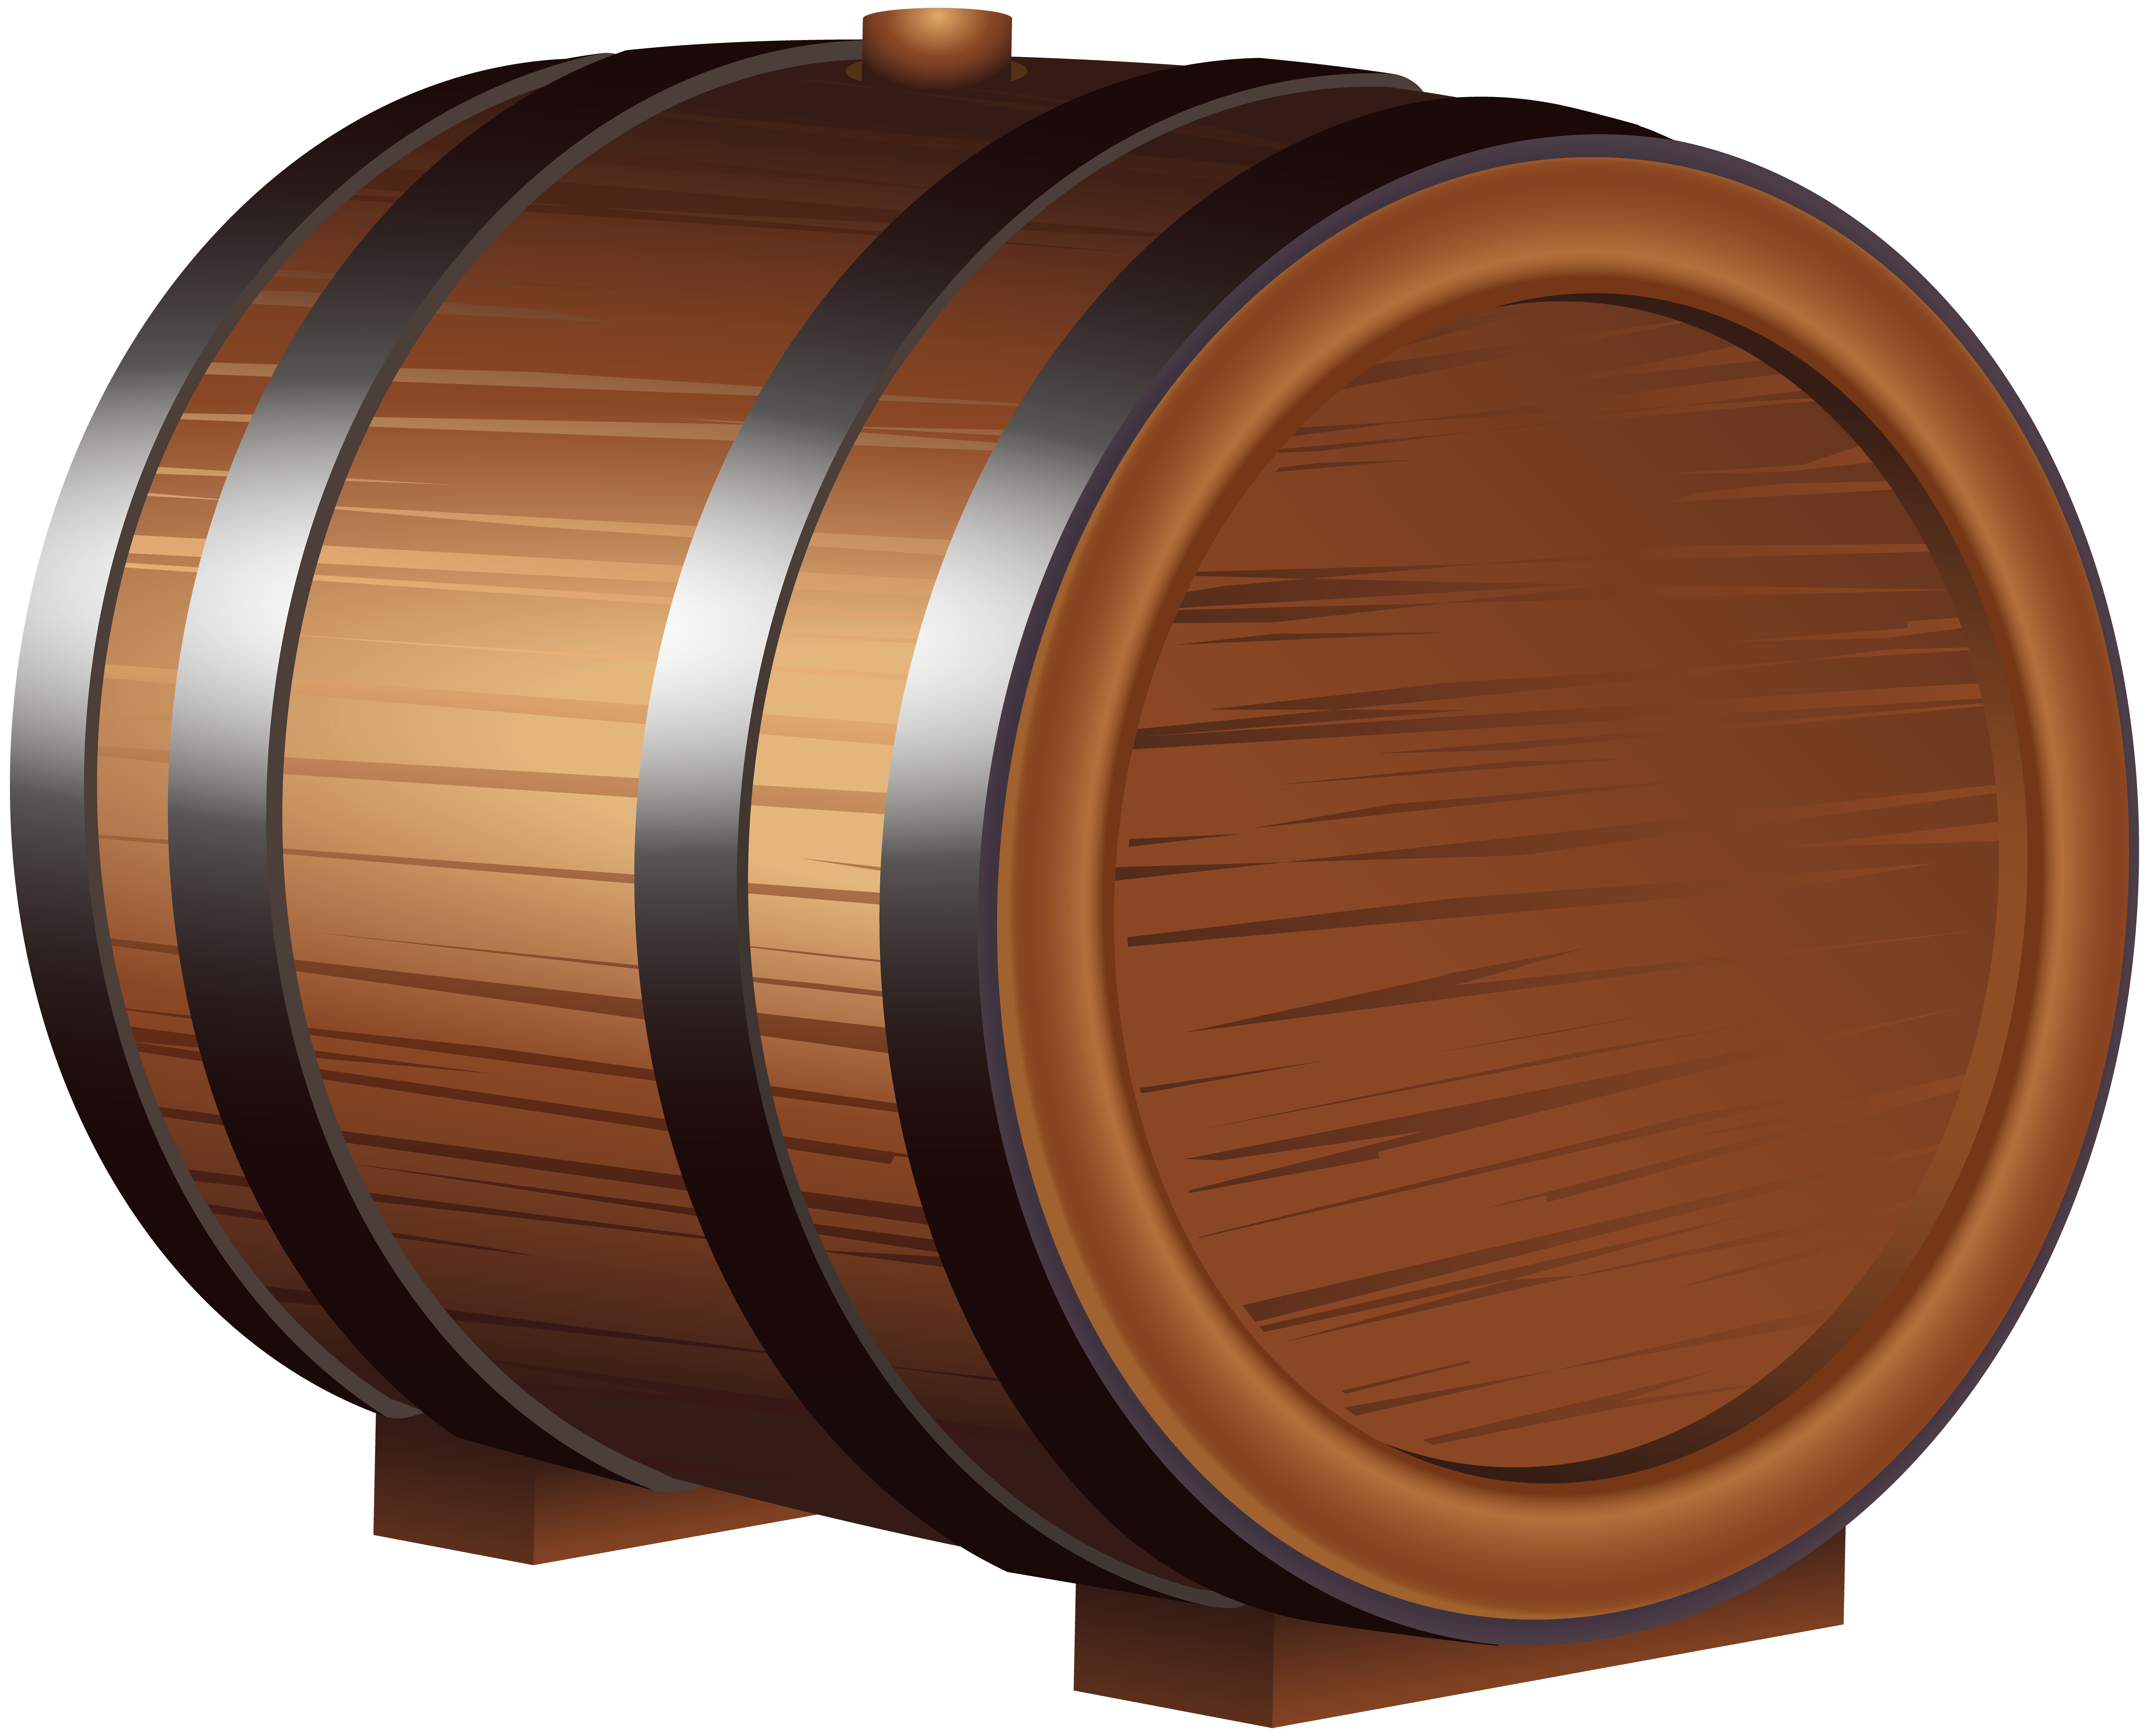 Wooden Barrel PNG Clip Art Image.